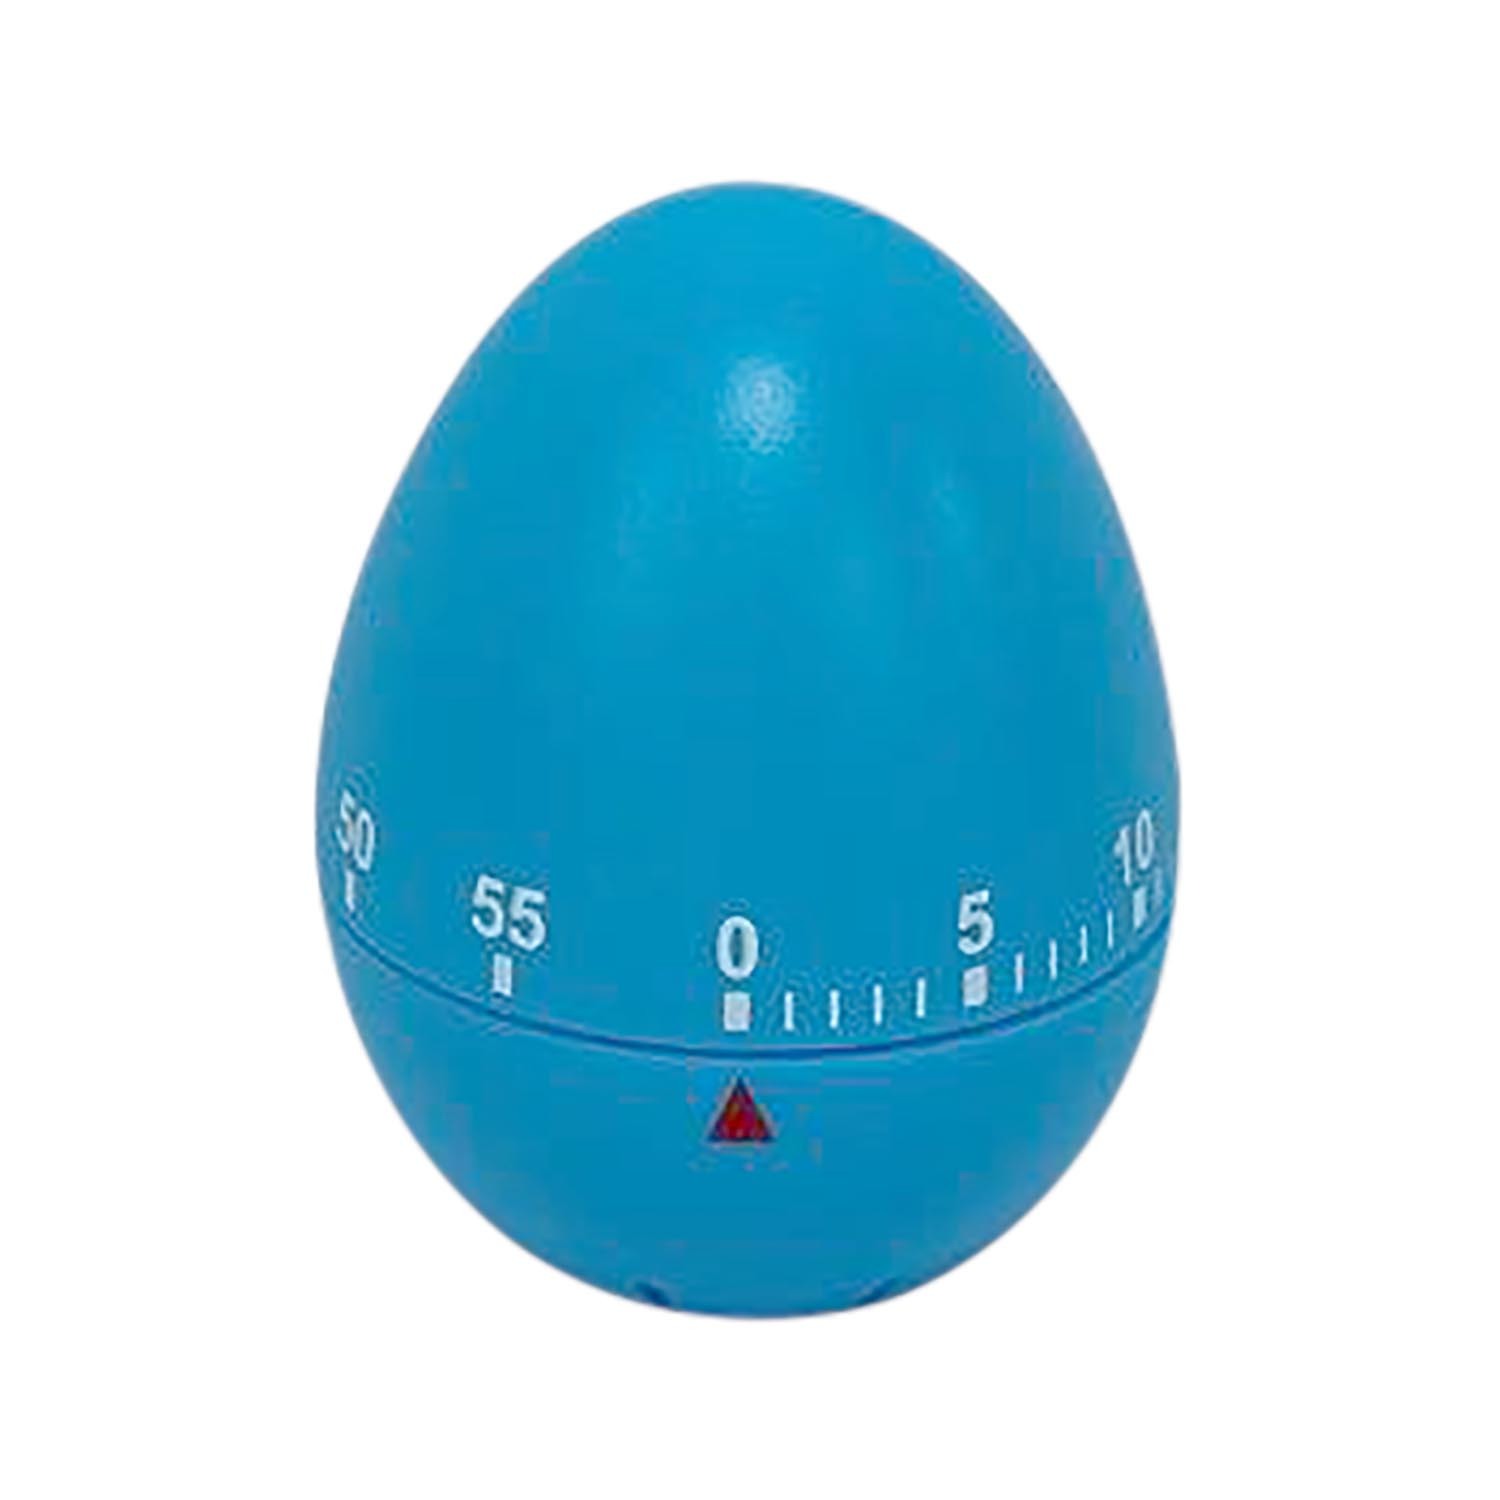 60-Minute Egg Timer - Blue Image